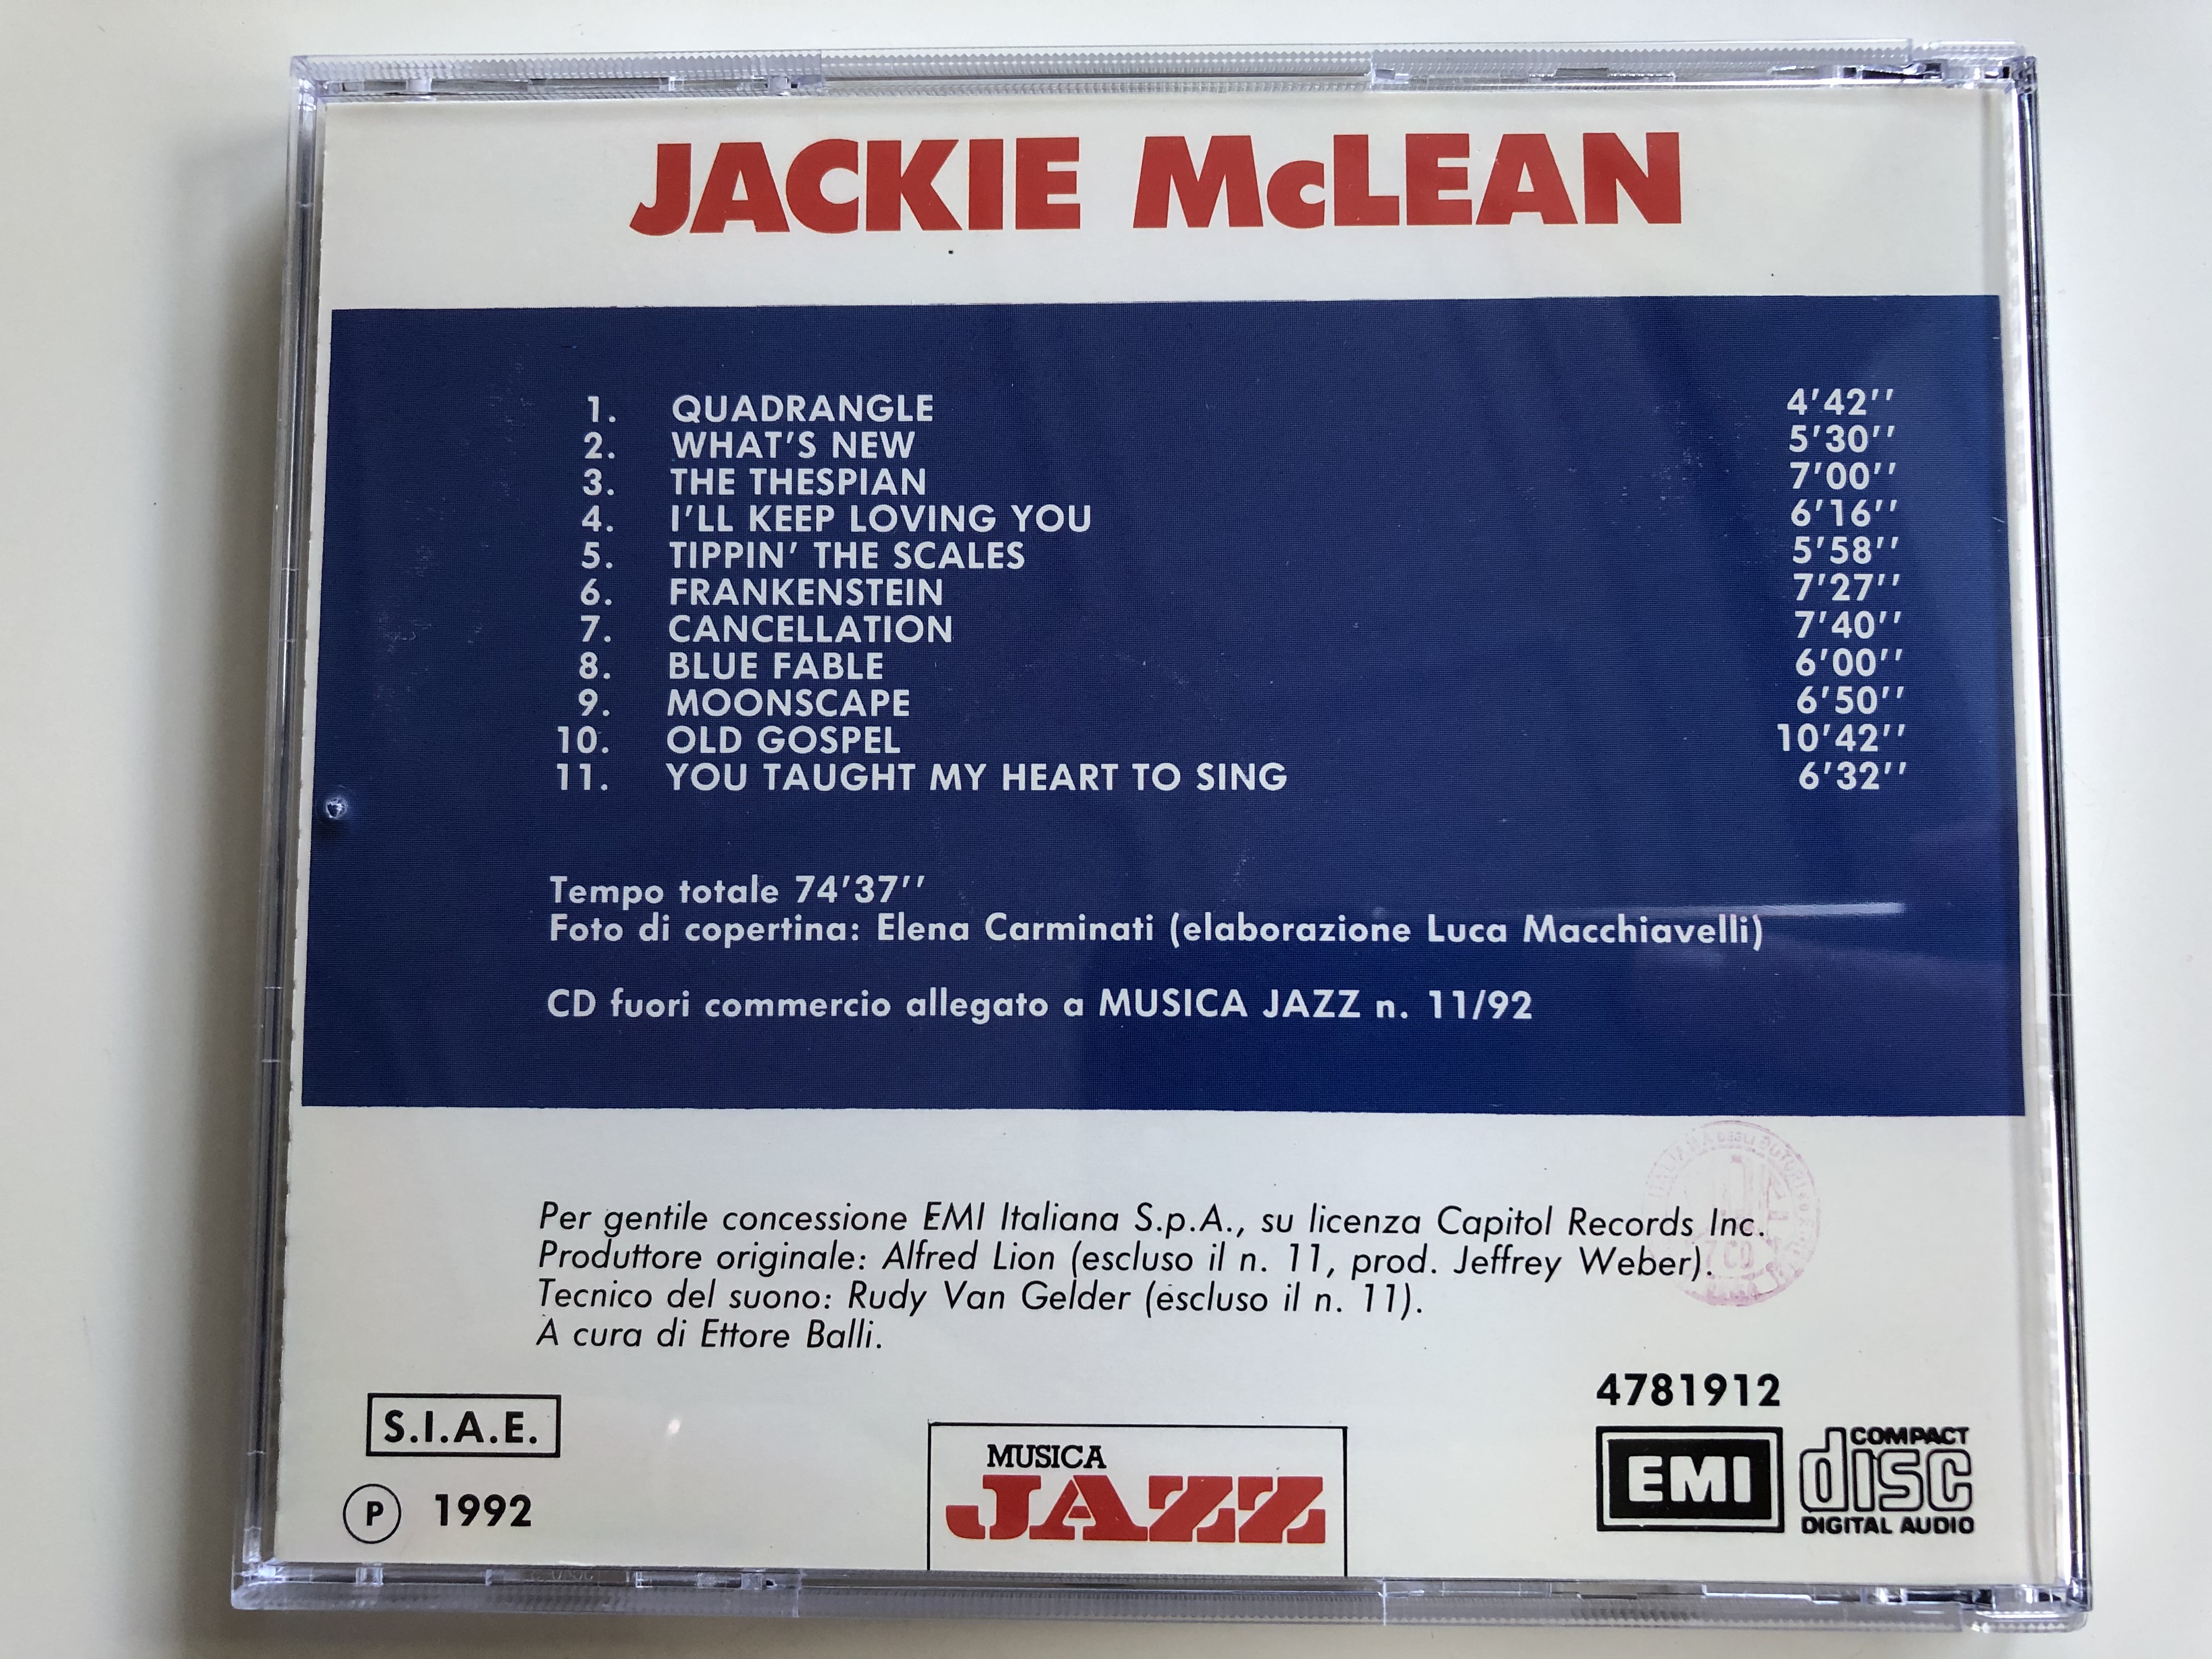 jackie-mclean-emi-audio-cd-1992-4781912-5-.jpg